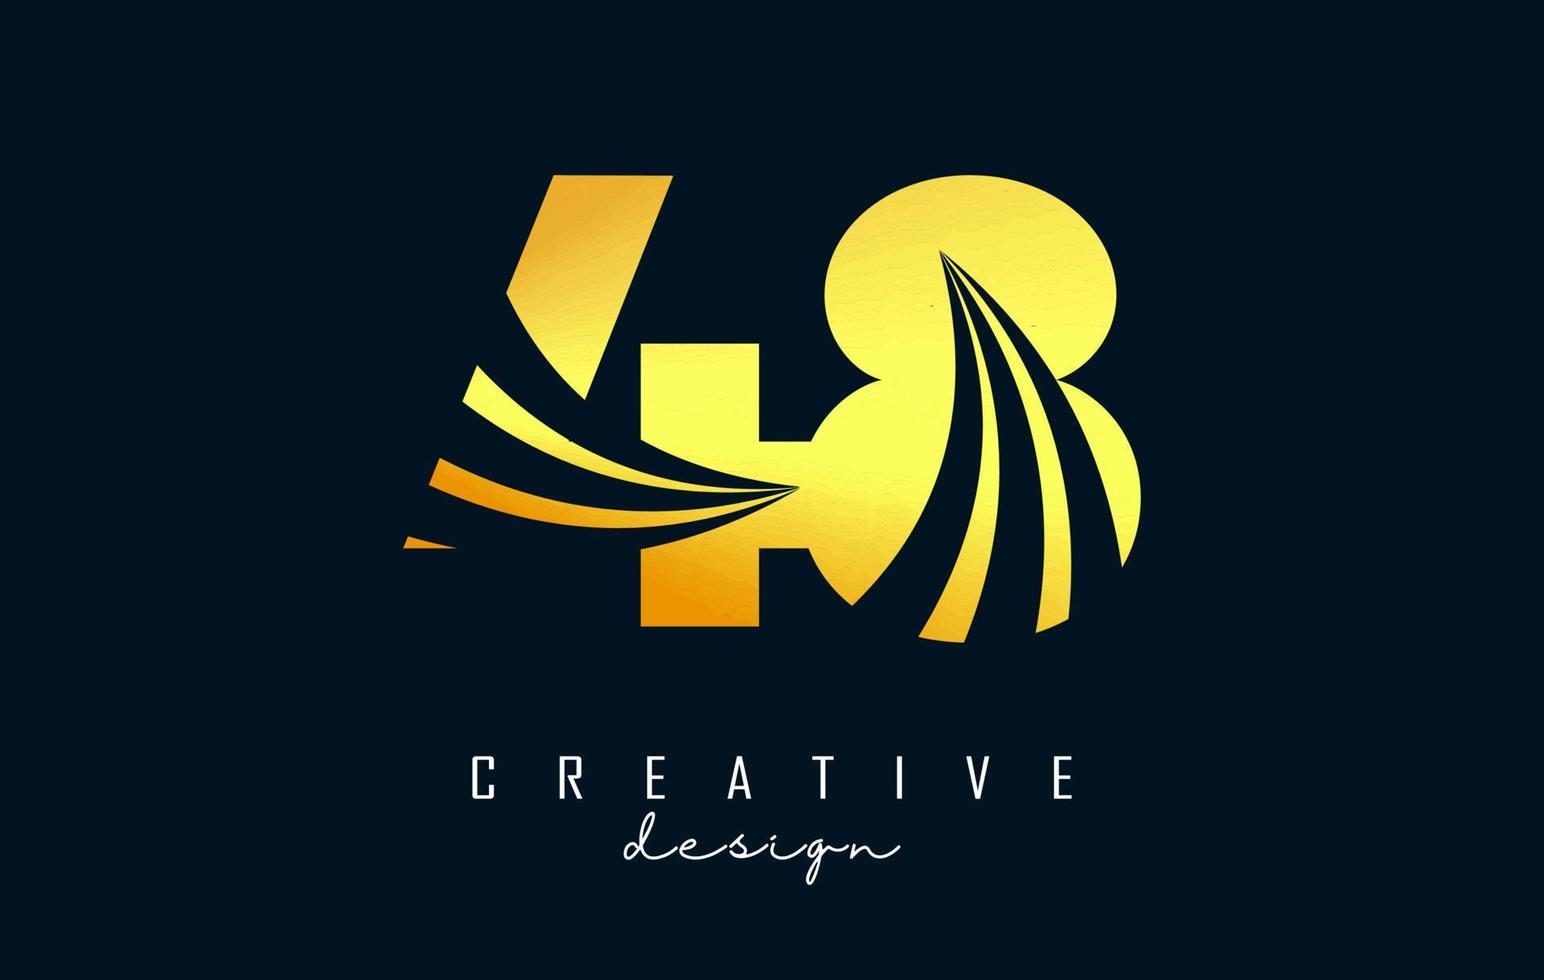 goldenes kreatives nummer 48 4 8 logo mit führenden linien und straßenkonzeptdesign. Nummer mit geometrischem Design. vektor